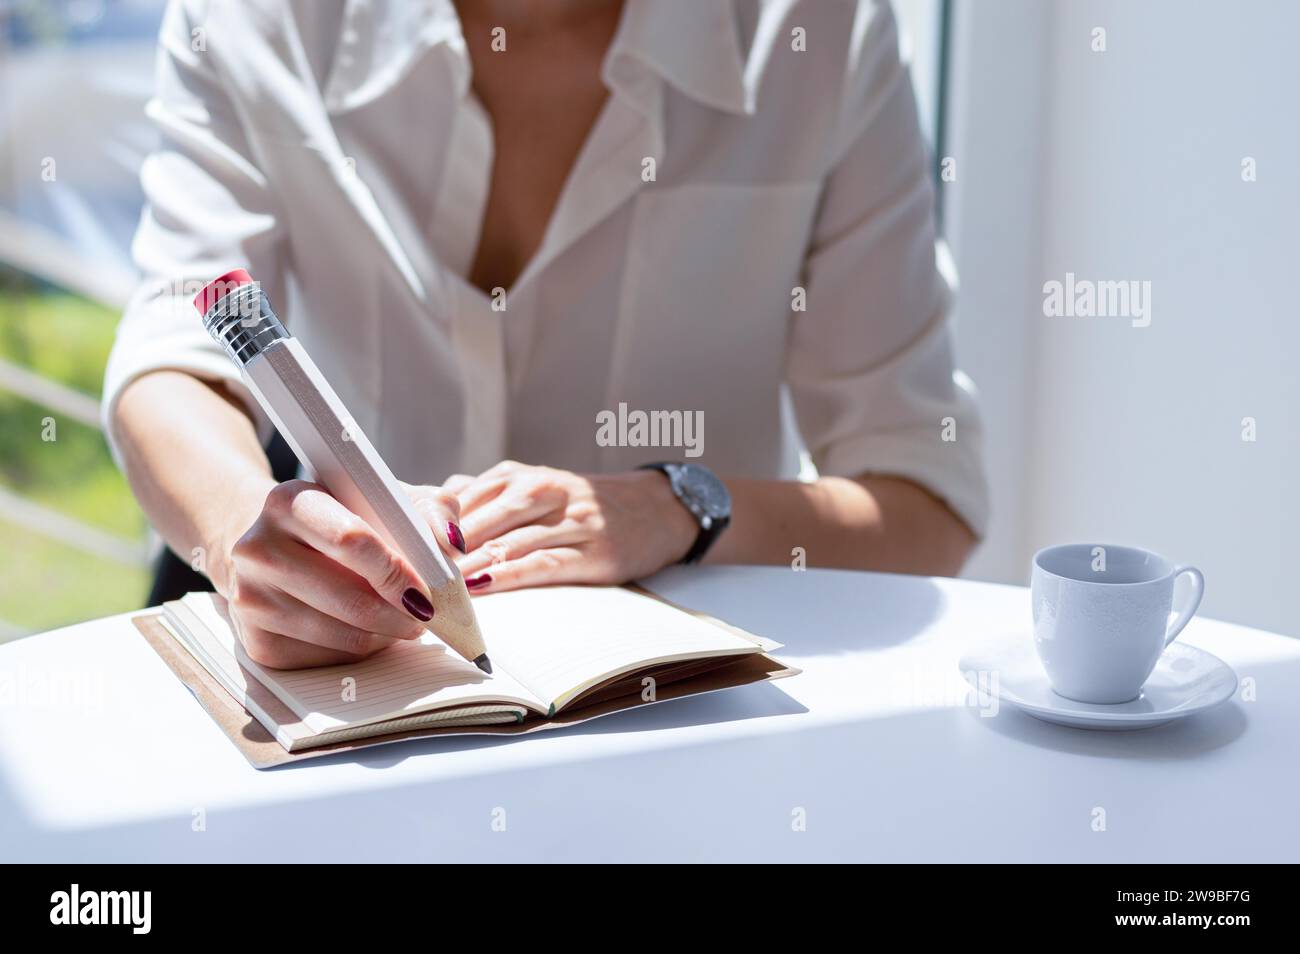 Das Mädchen schreibt mit einem großen Bleistift in ein Notizbuch. Vorstellung von Vorstellungsgespräch, Geschäft, Erfolg. Gemischte Medien Stockfoto